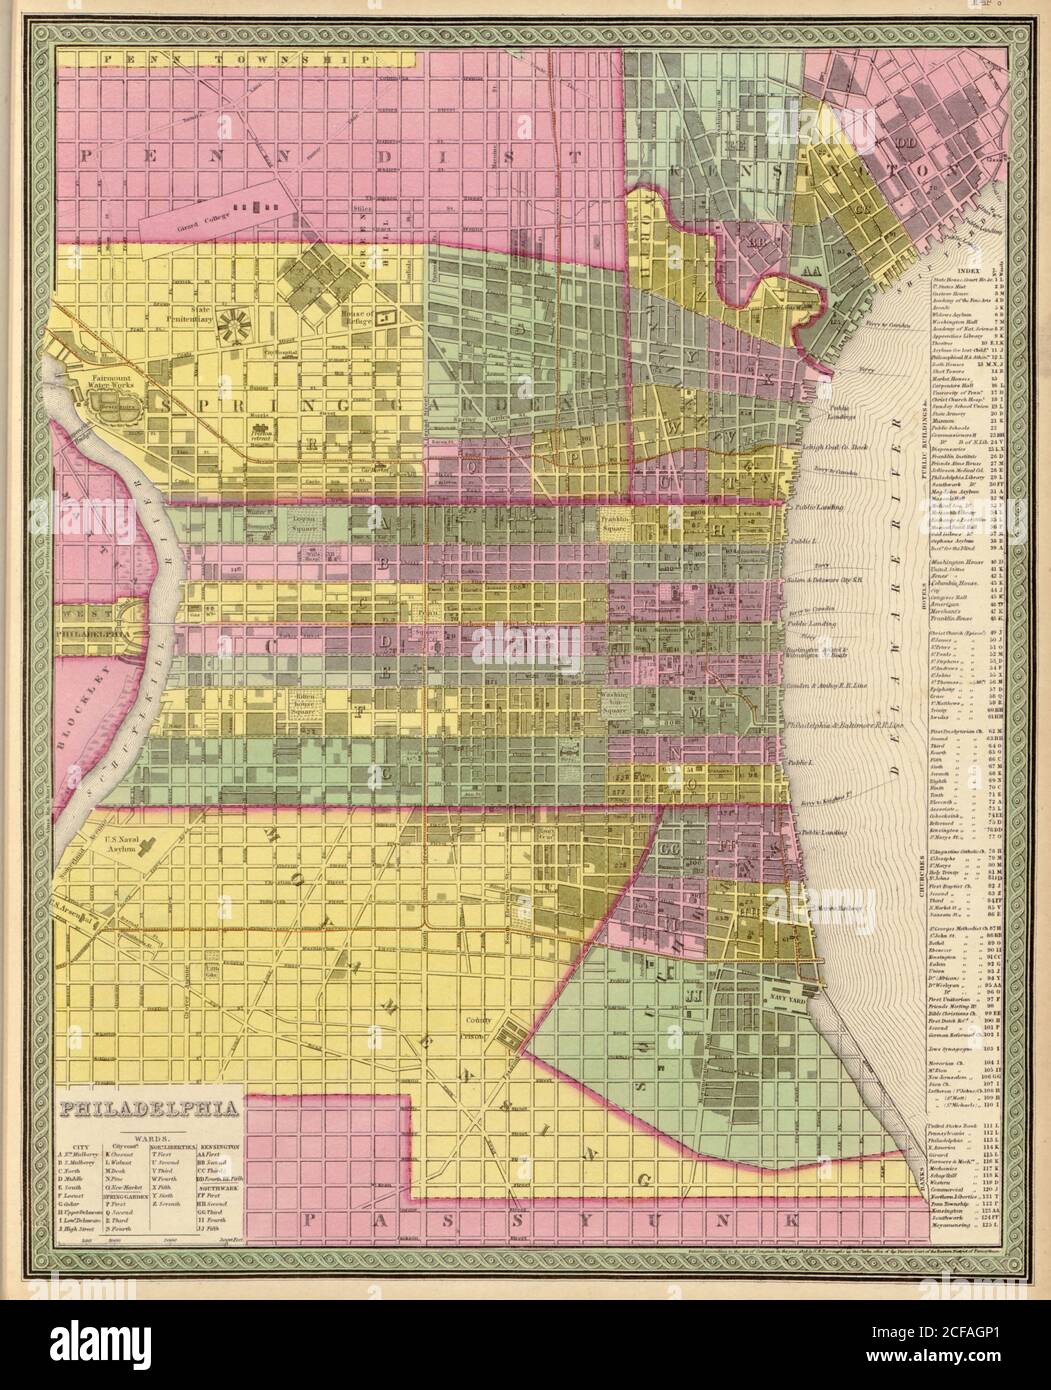 City of Philadelphia - 1849 Stock Photo